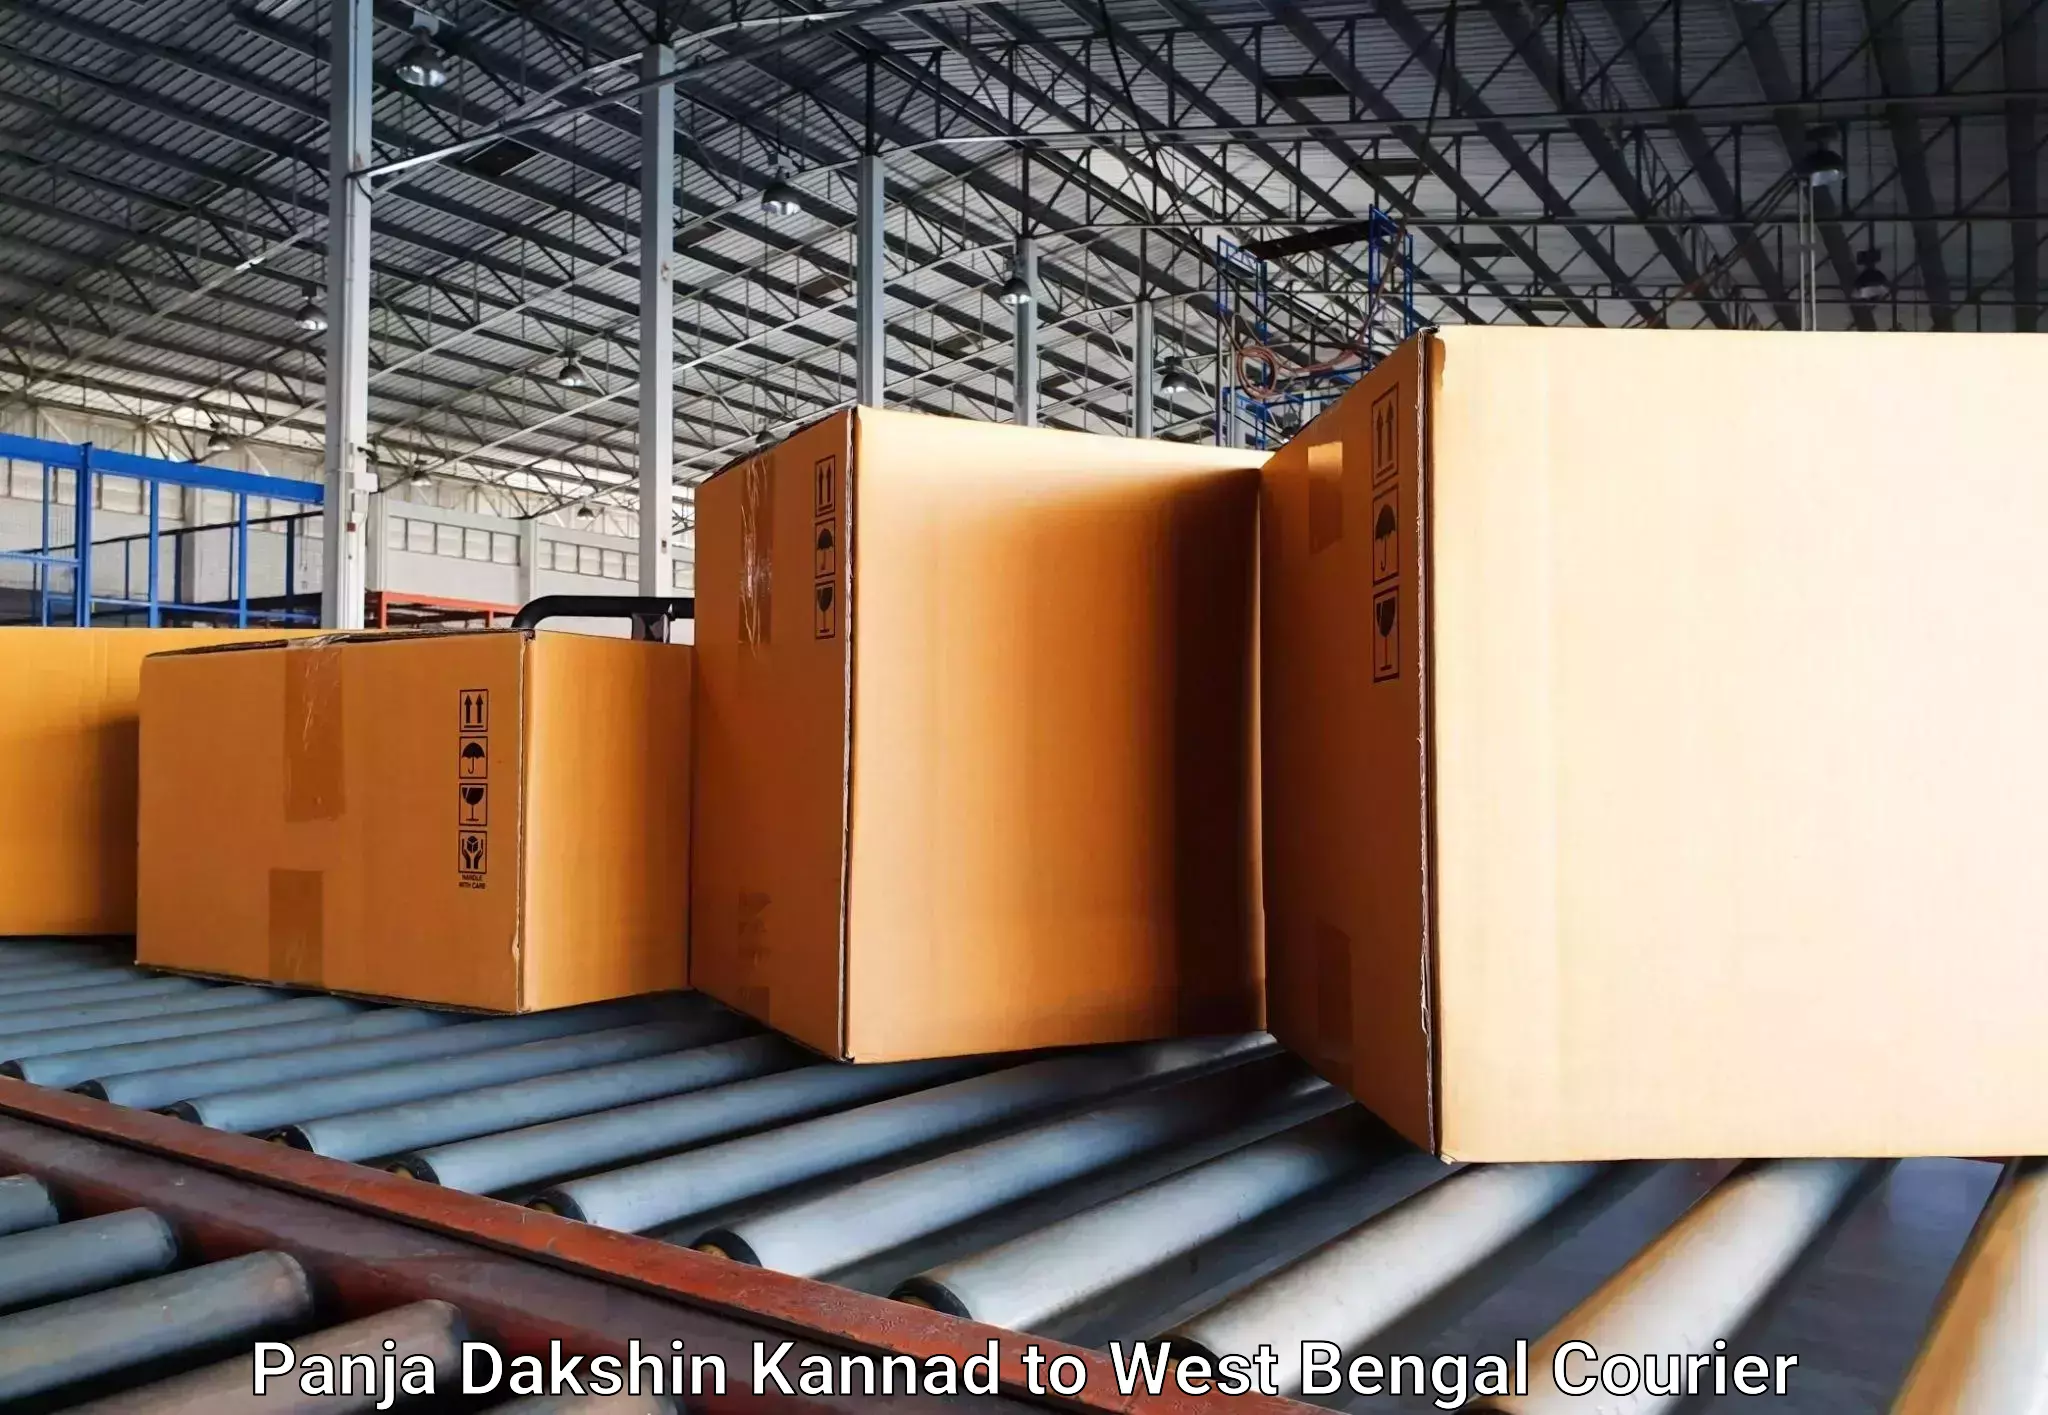 Baggage shipping experience Panja Dakshin Kannad to Chittaranjan